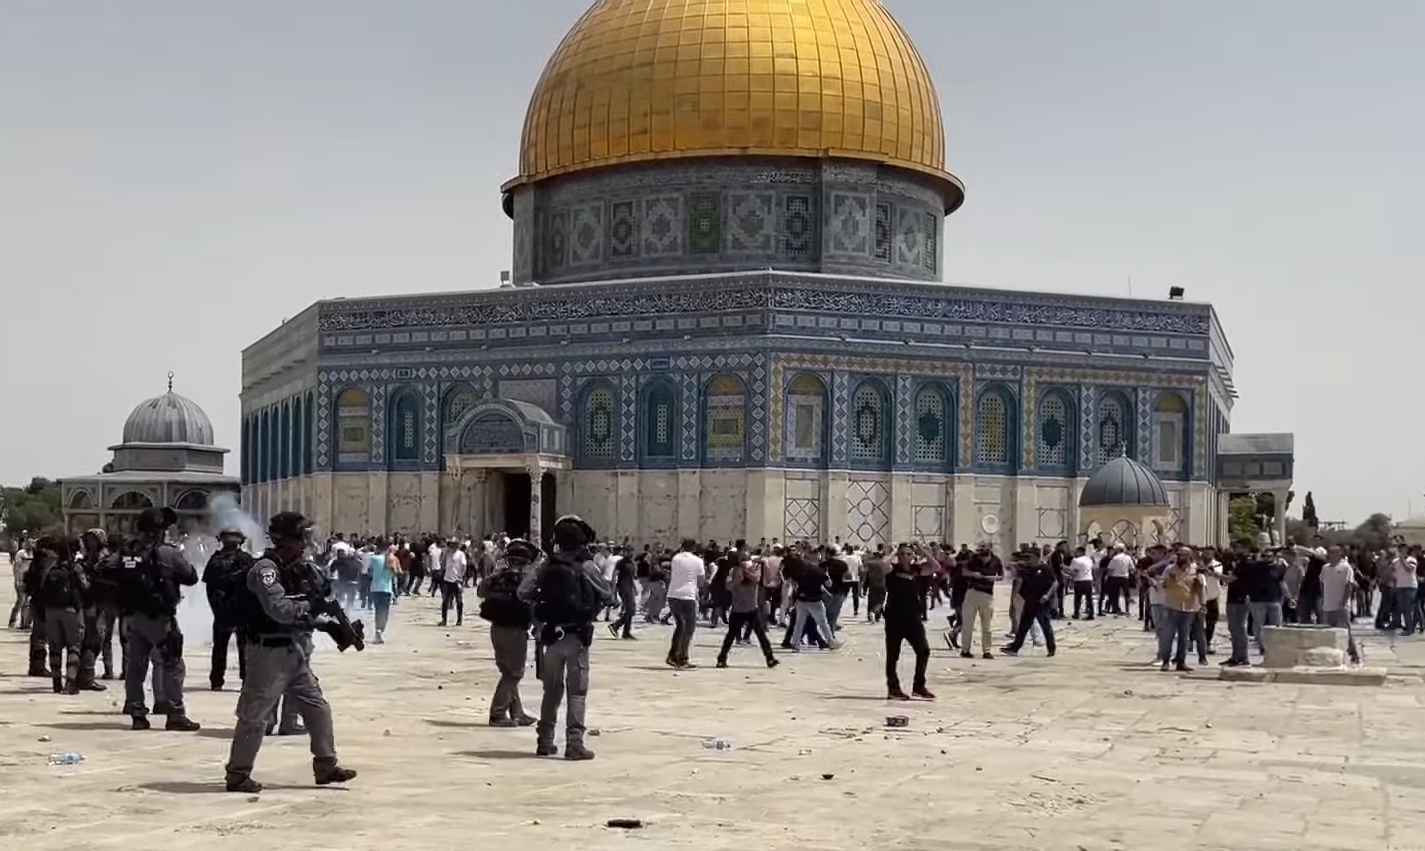 Serangan terbaru polisi Israel ke lokasi kompleks Masjid Al Aqsa di Yerusalem pada Jumat, 21 Mei 2021.